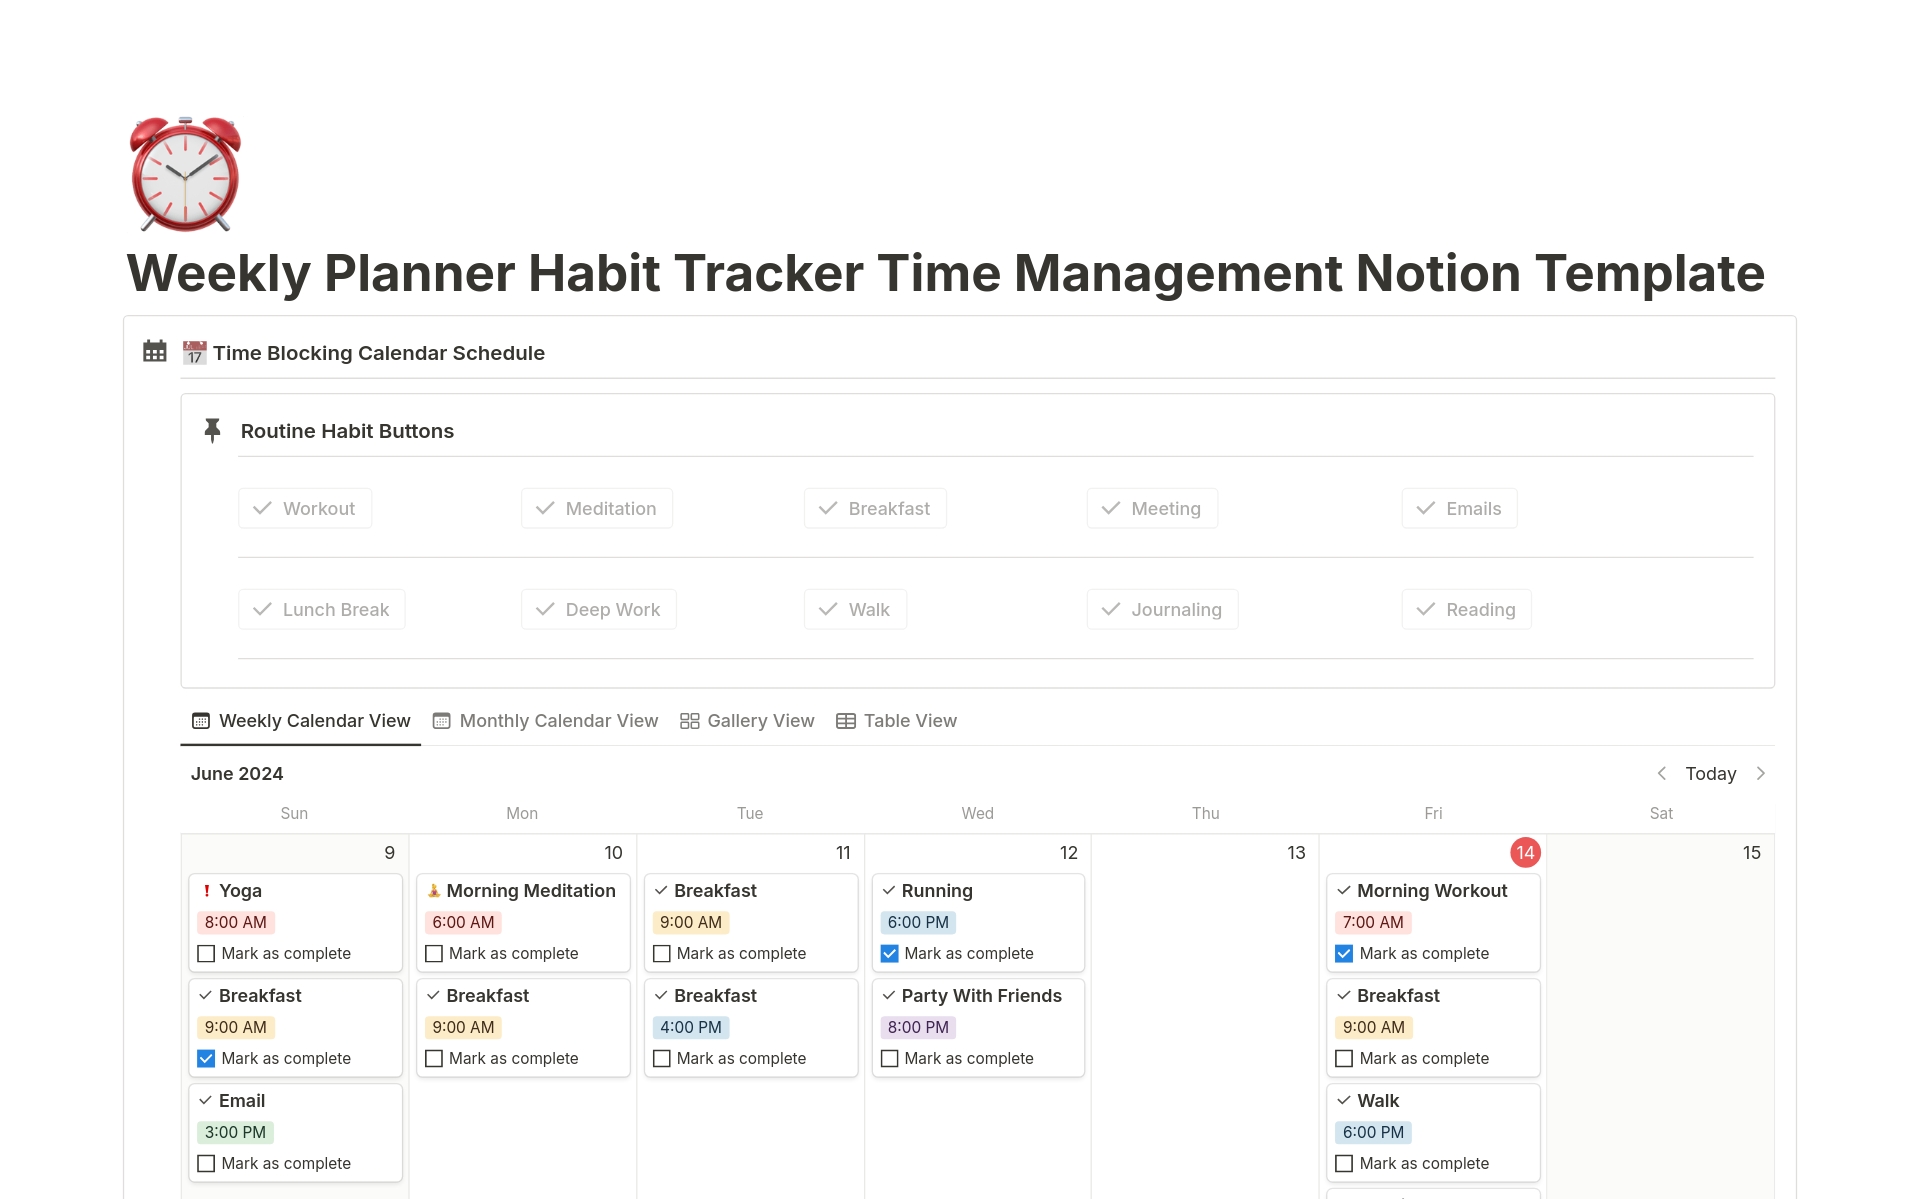 Weekly Planner Habit Tracker Time Management님의 템플릿 미리보기